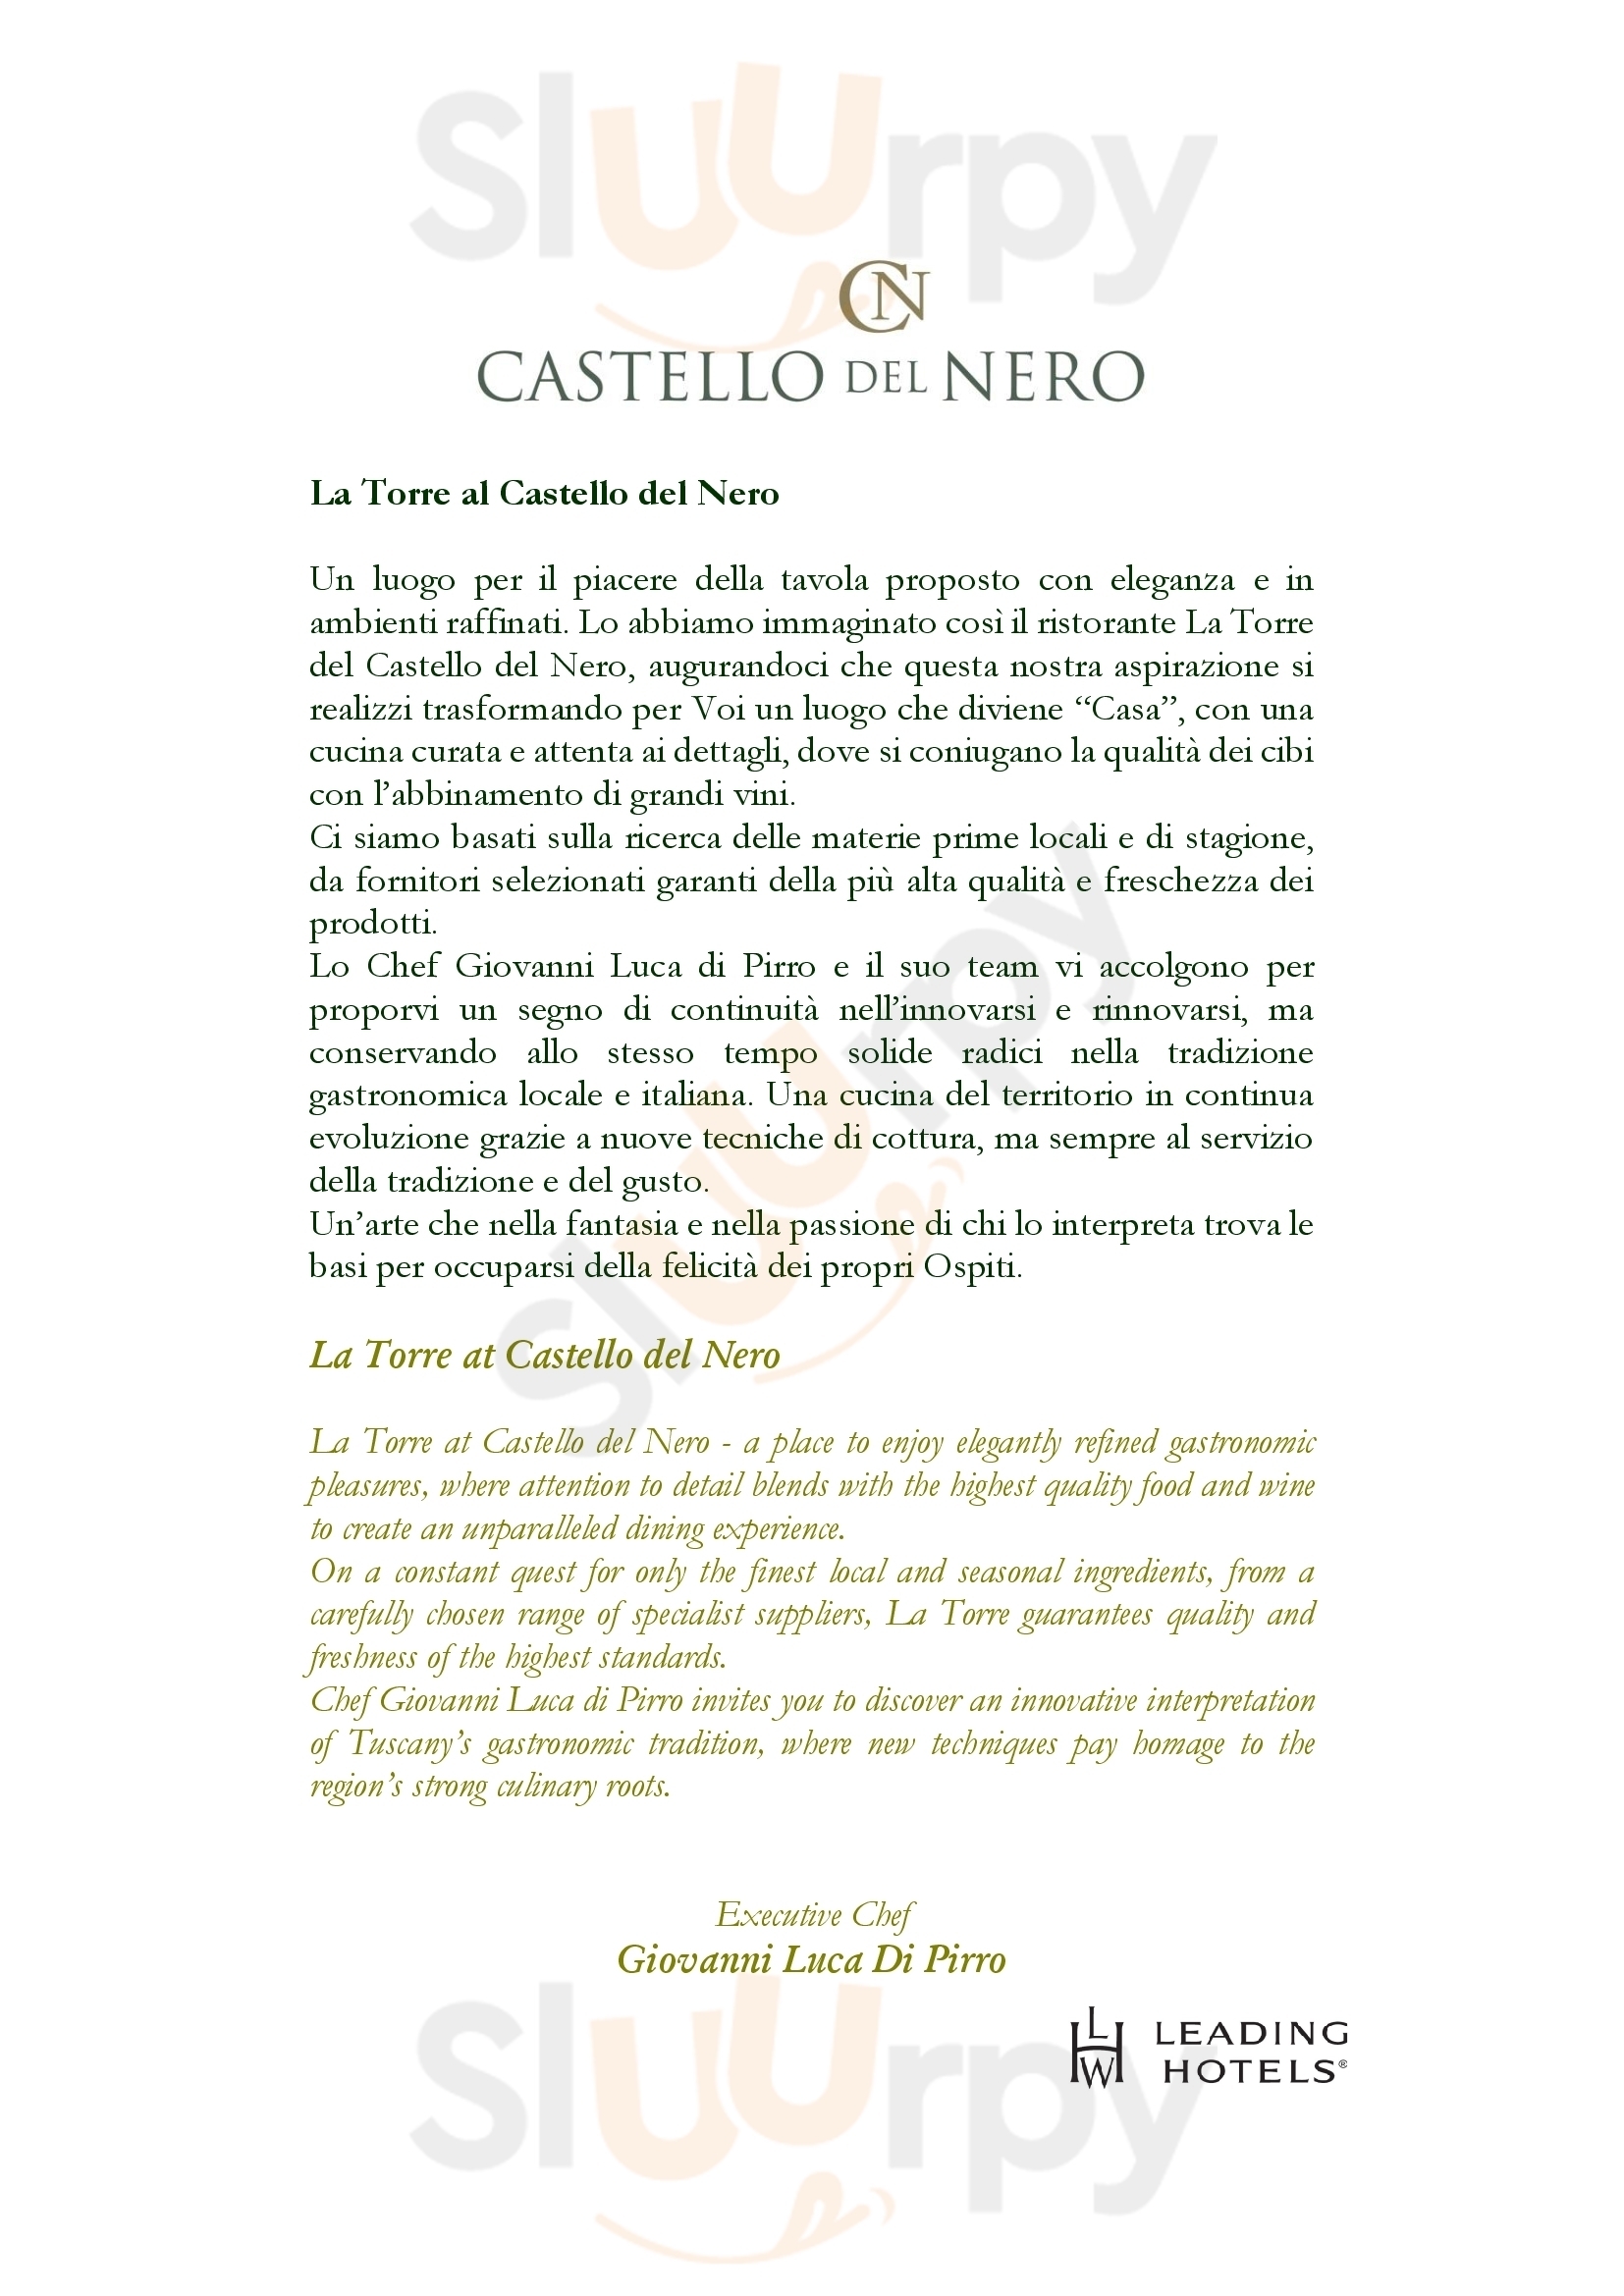 La Torre del Castello del Nero Hotel & Spa Tavarnelle Val di Pesa menù 1 pagina